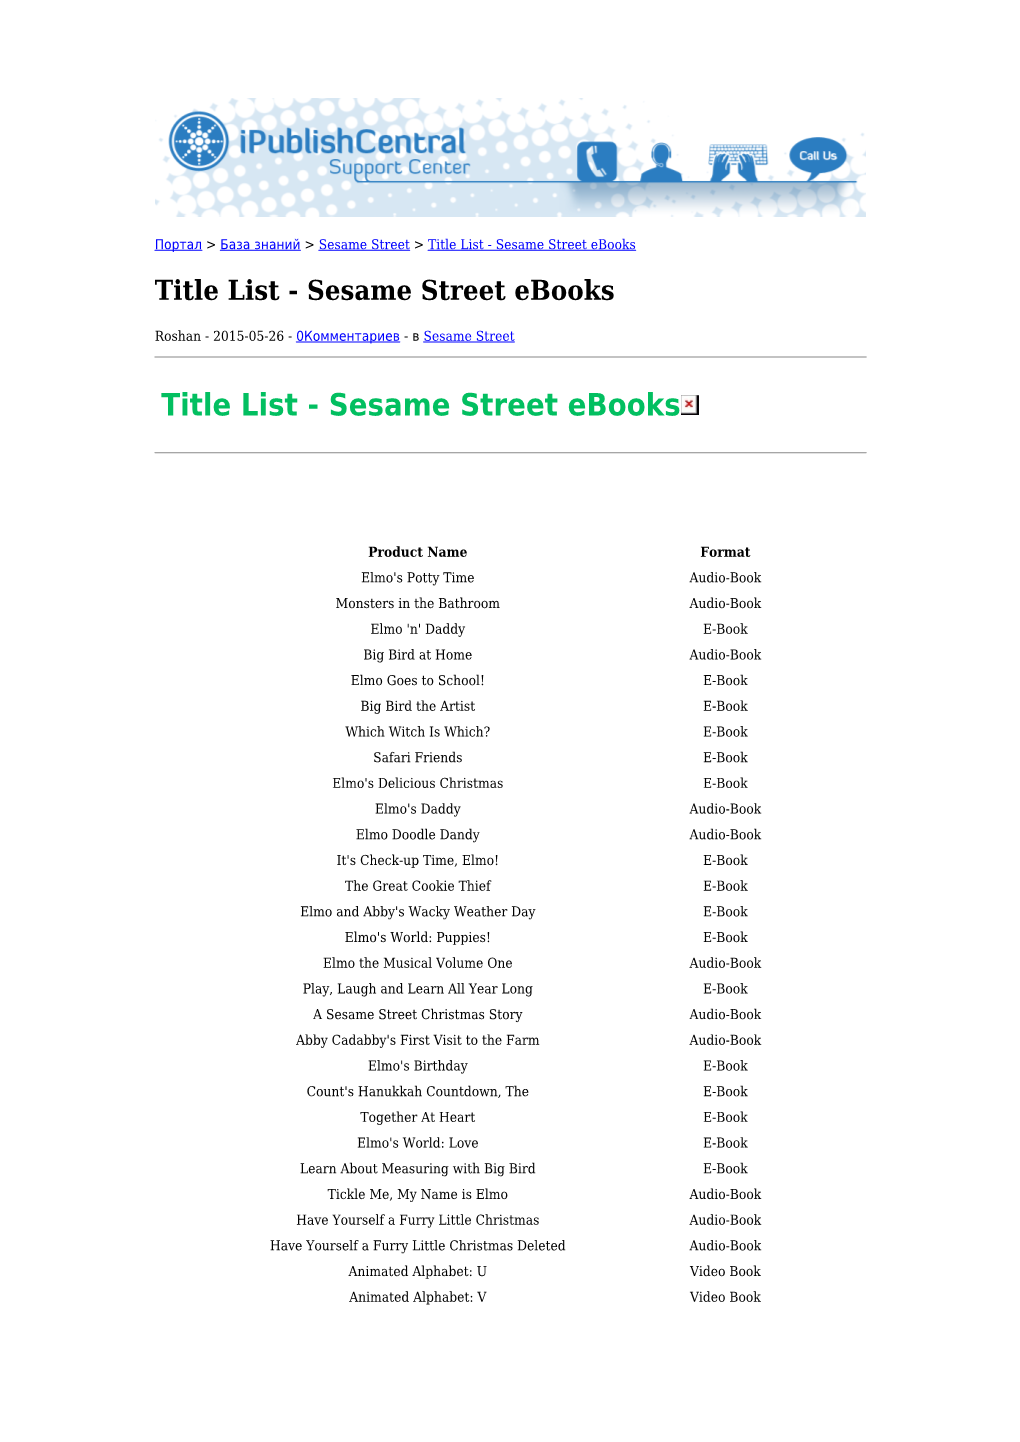 Sesame Street Ebooks Title List - Sesame Street Ebooks